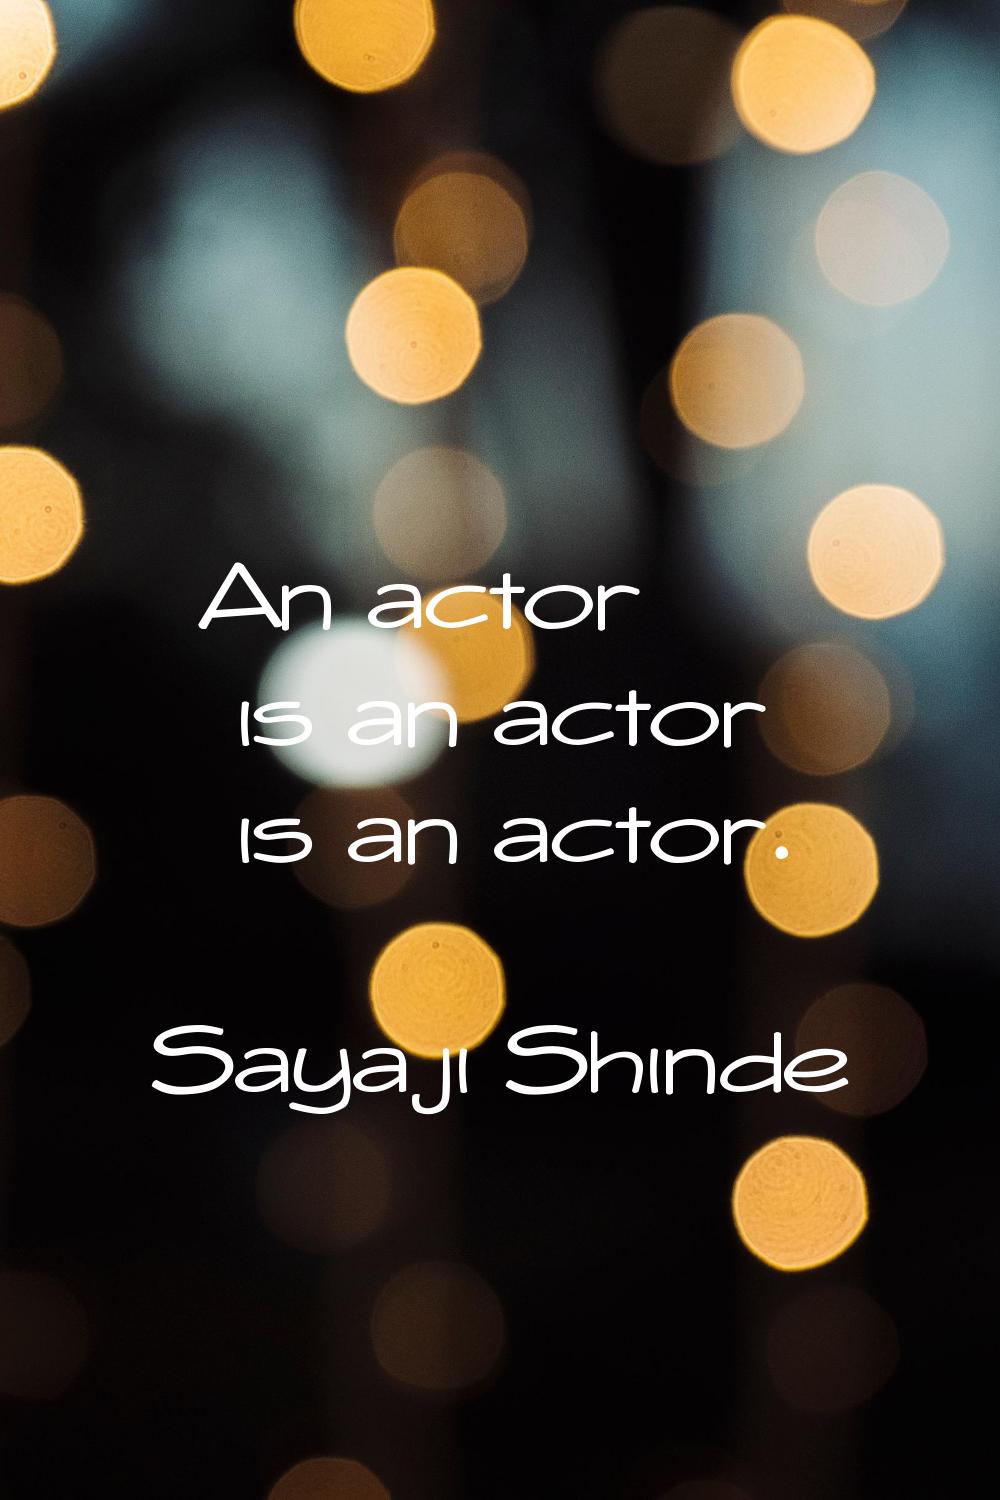 An actor is an actor is an actor.